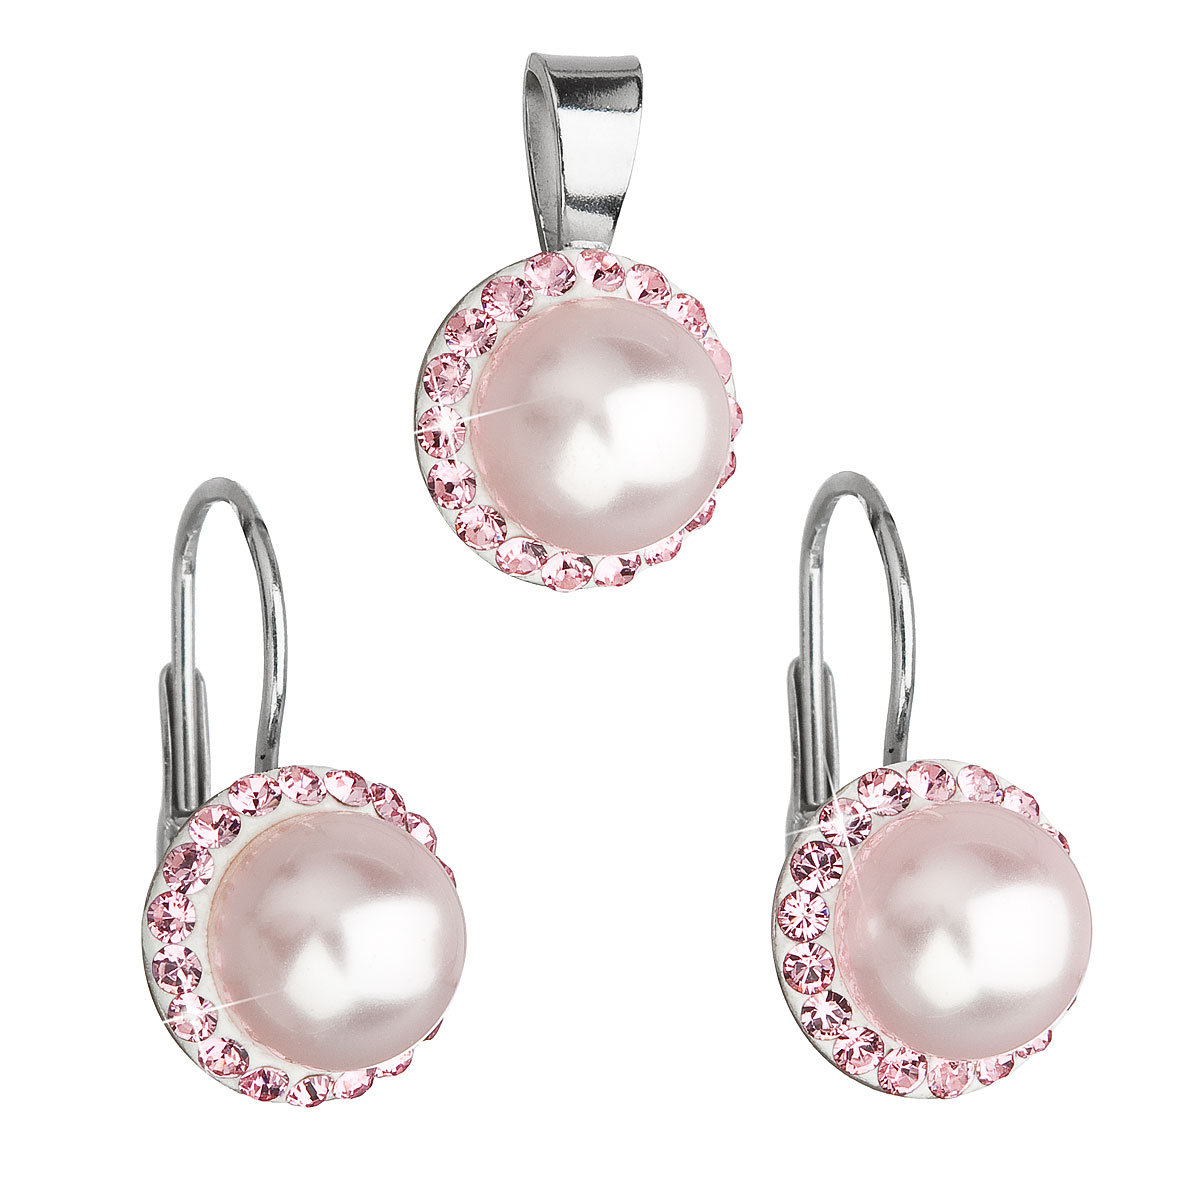 Evolution Group Sada šperků s krystaly Swarovski náušnice a přívěsek růžová perla kulaté 39091.3